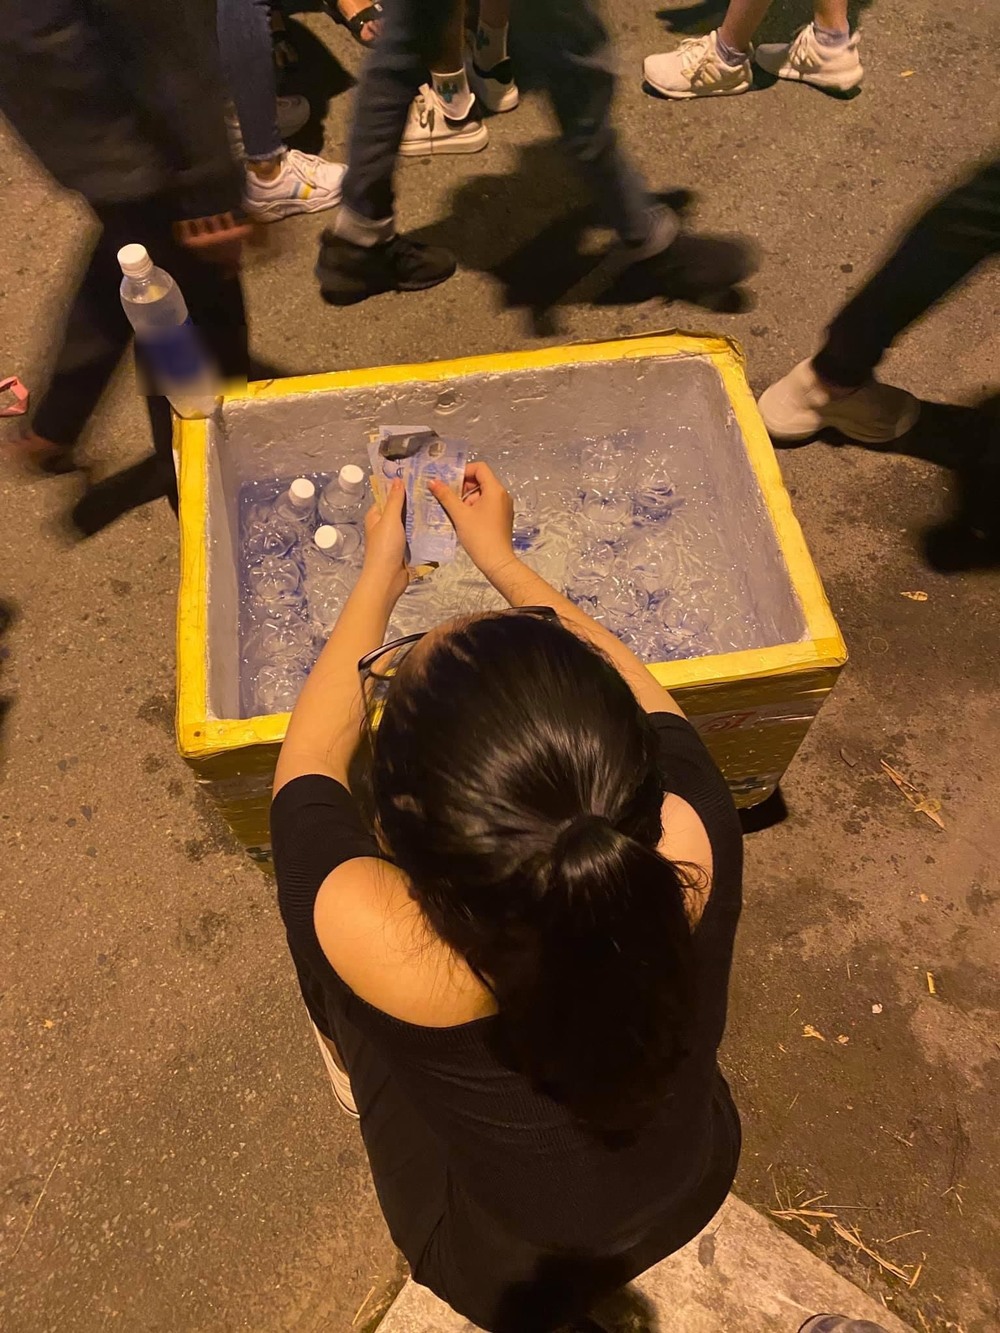  
Cô gái ngồi xổm bên thùng nước suối giúp đỡ chú bán hàng rong. (Ảnh: FB H.Y)